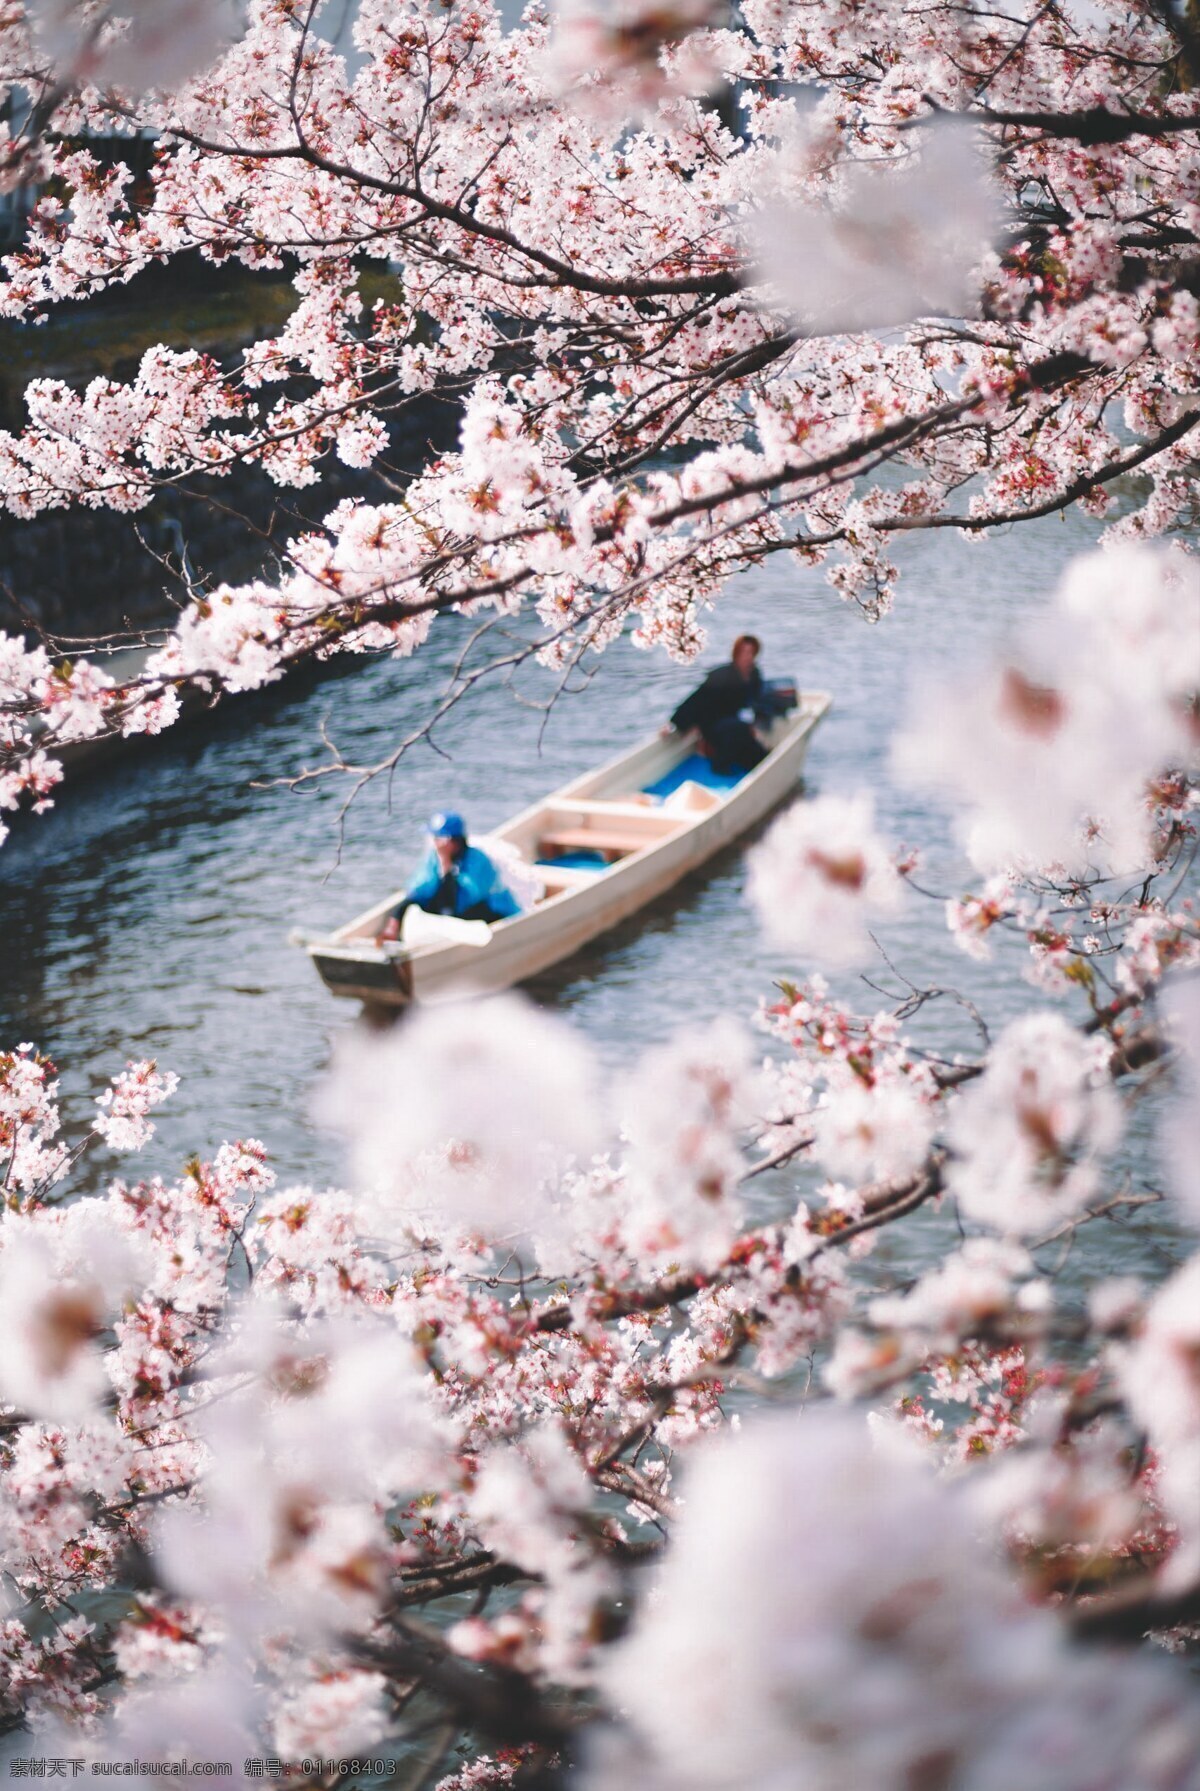 日本樱花 日本 樱花 船 三月 粉樱花 樱花海 旅游摄影 自然风景